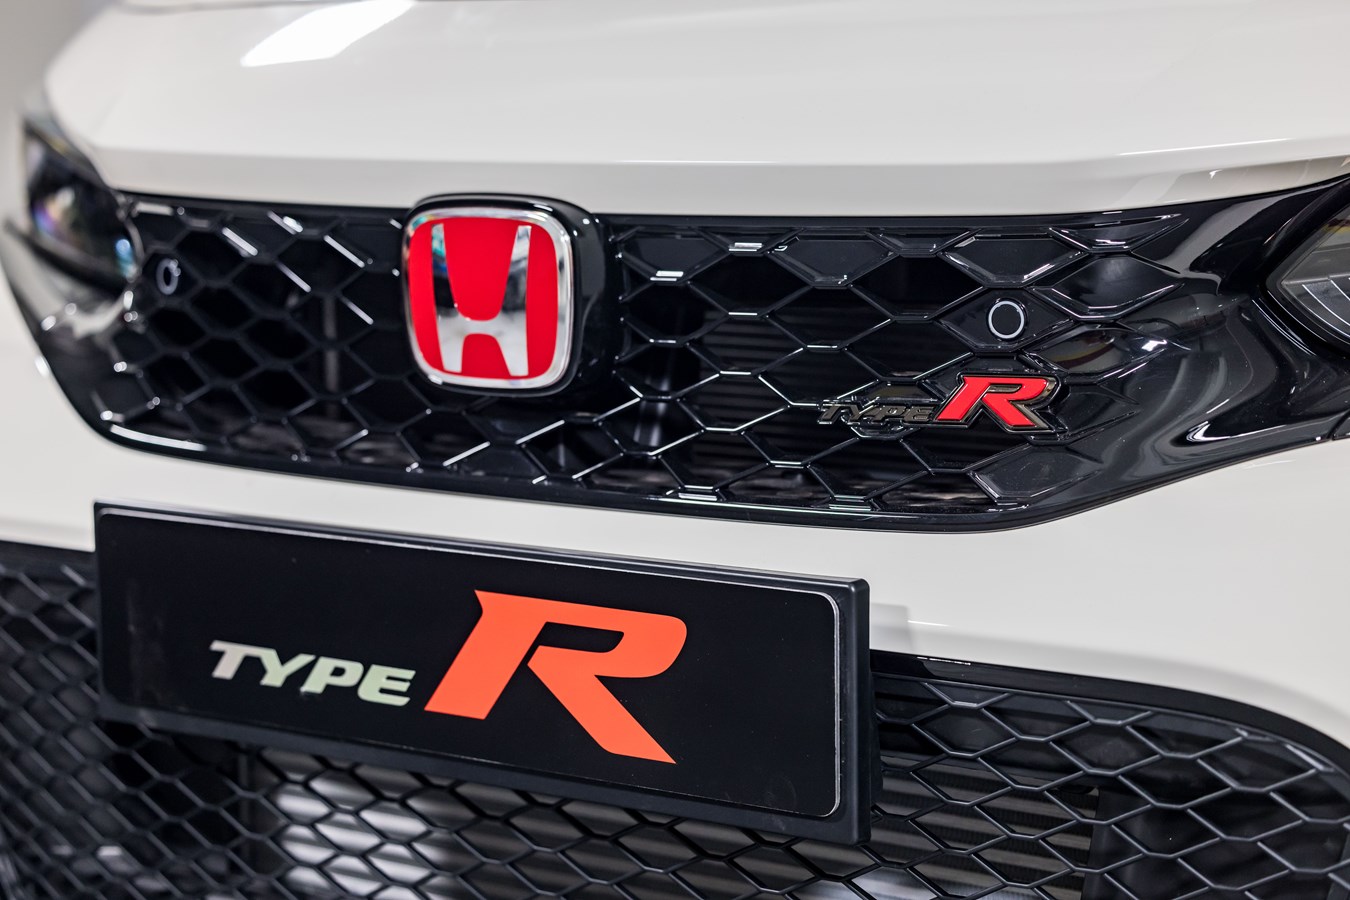 Honda Civic Type R unveil images